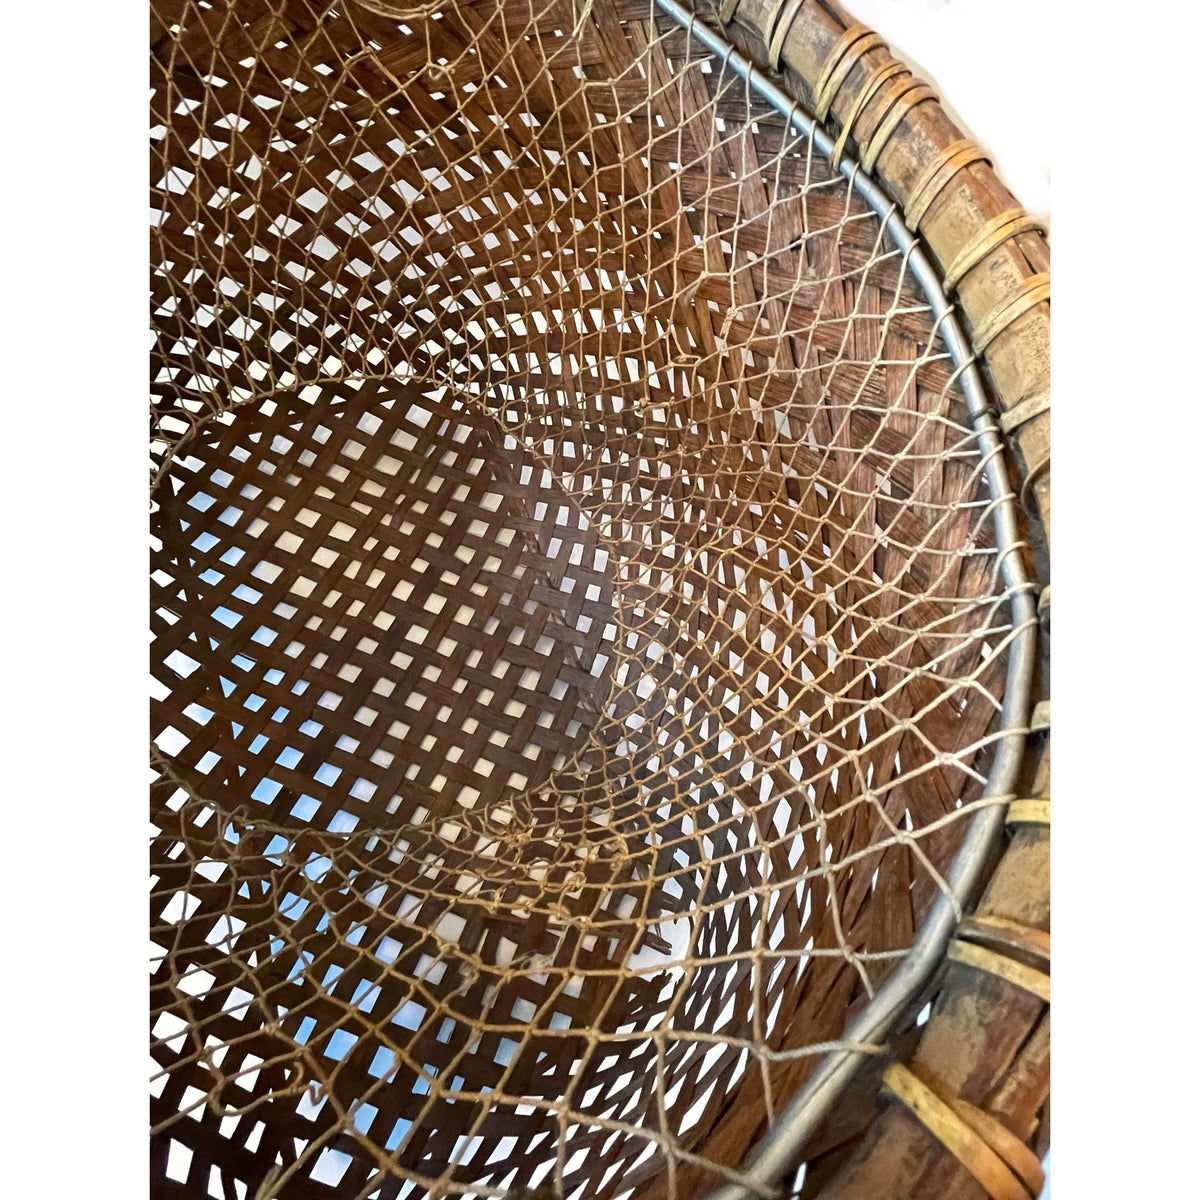 Philippine Round Fish Trap Basket